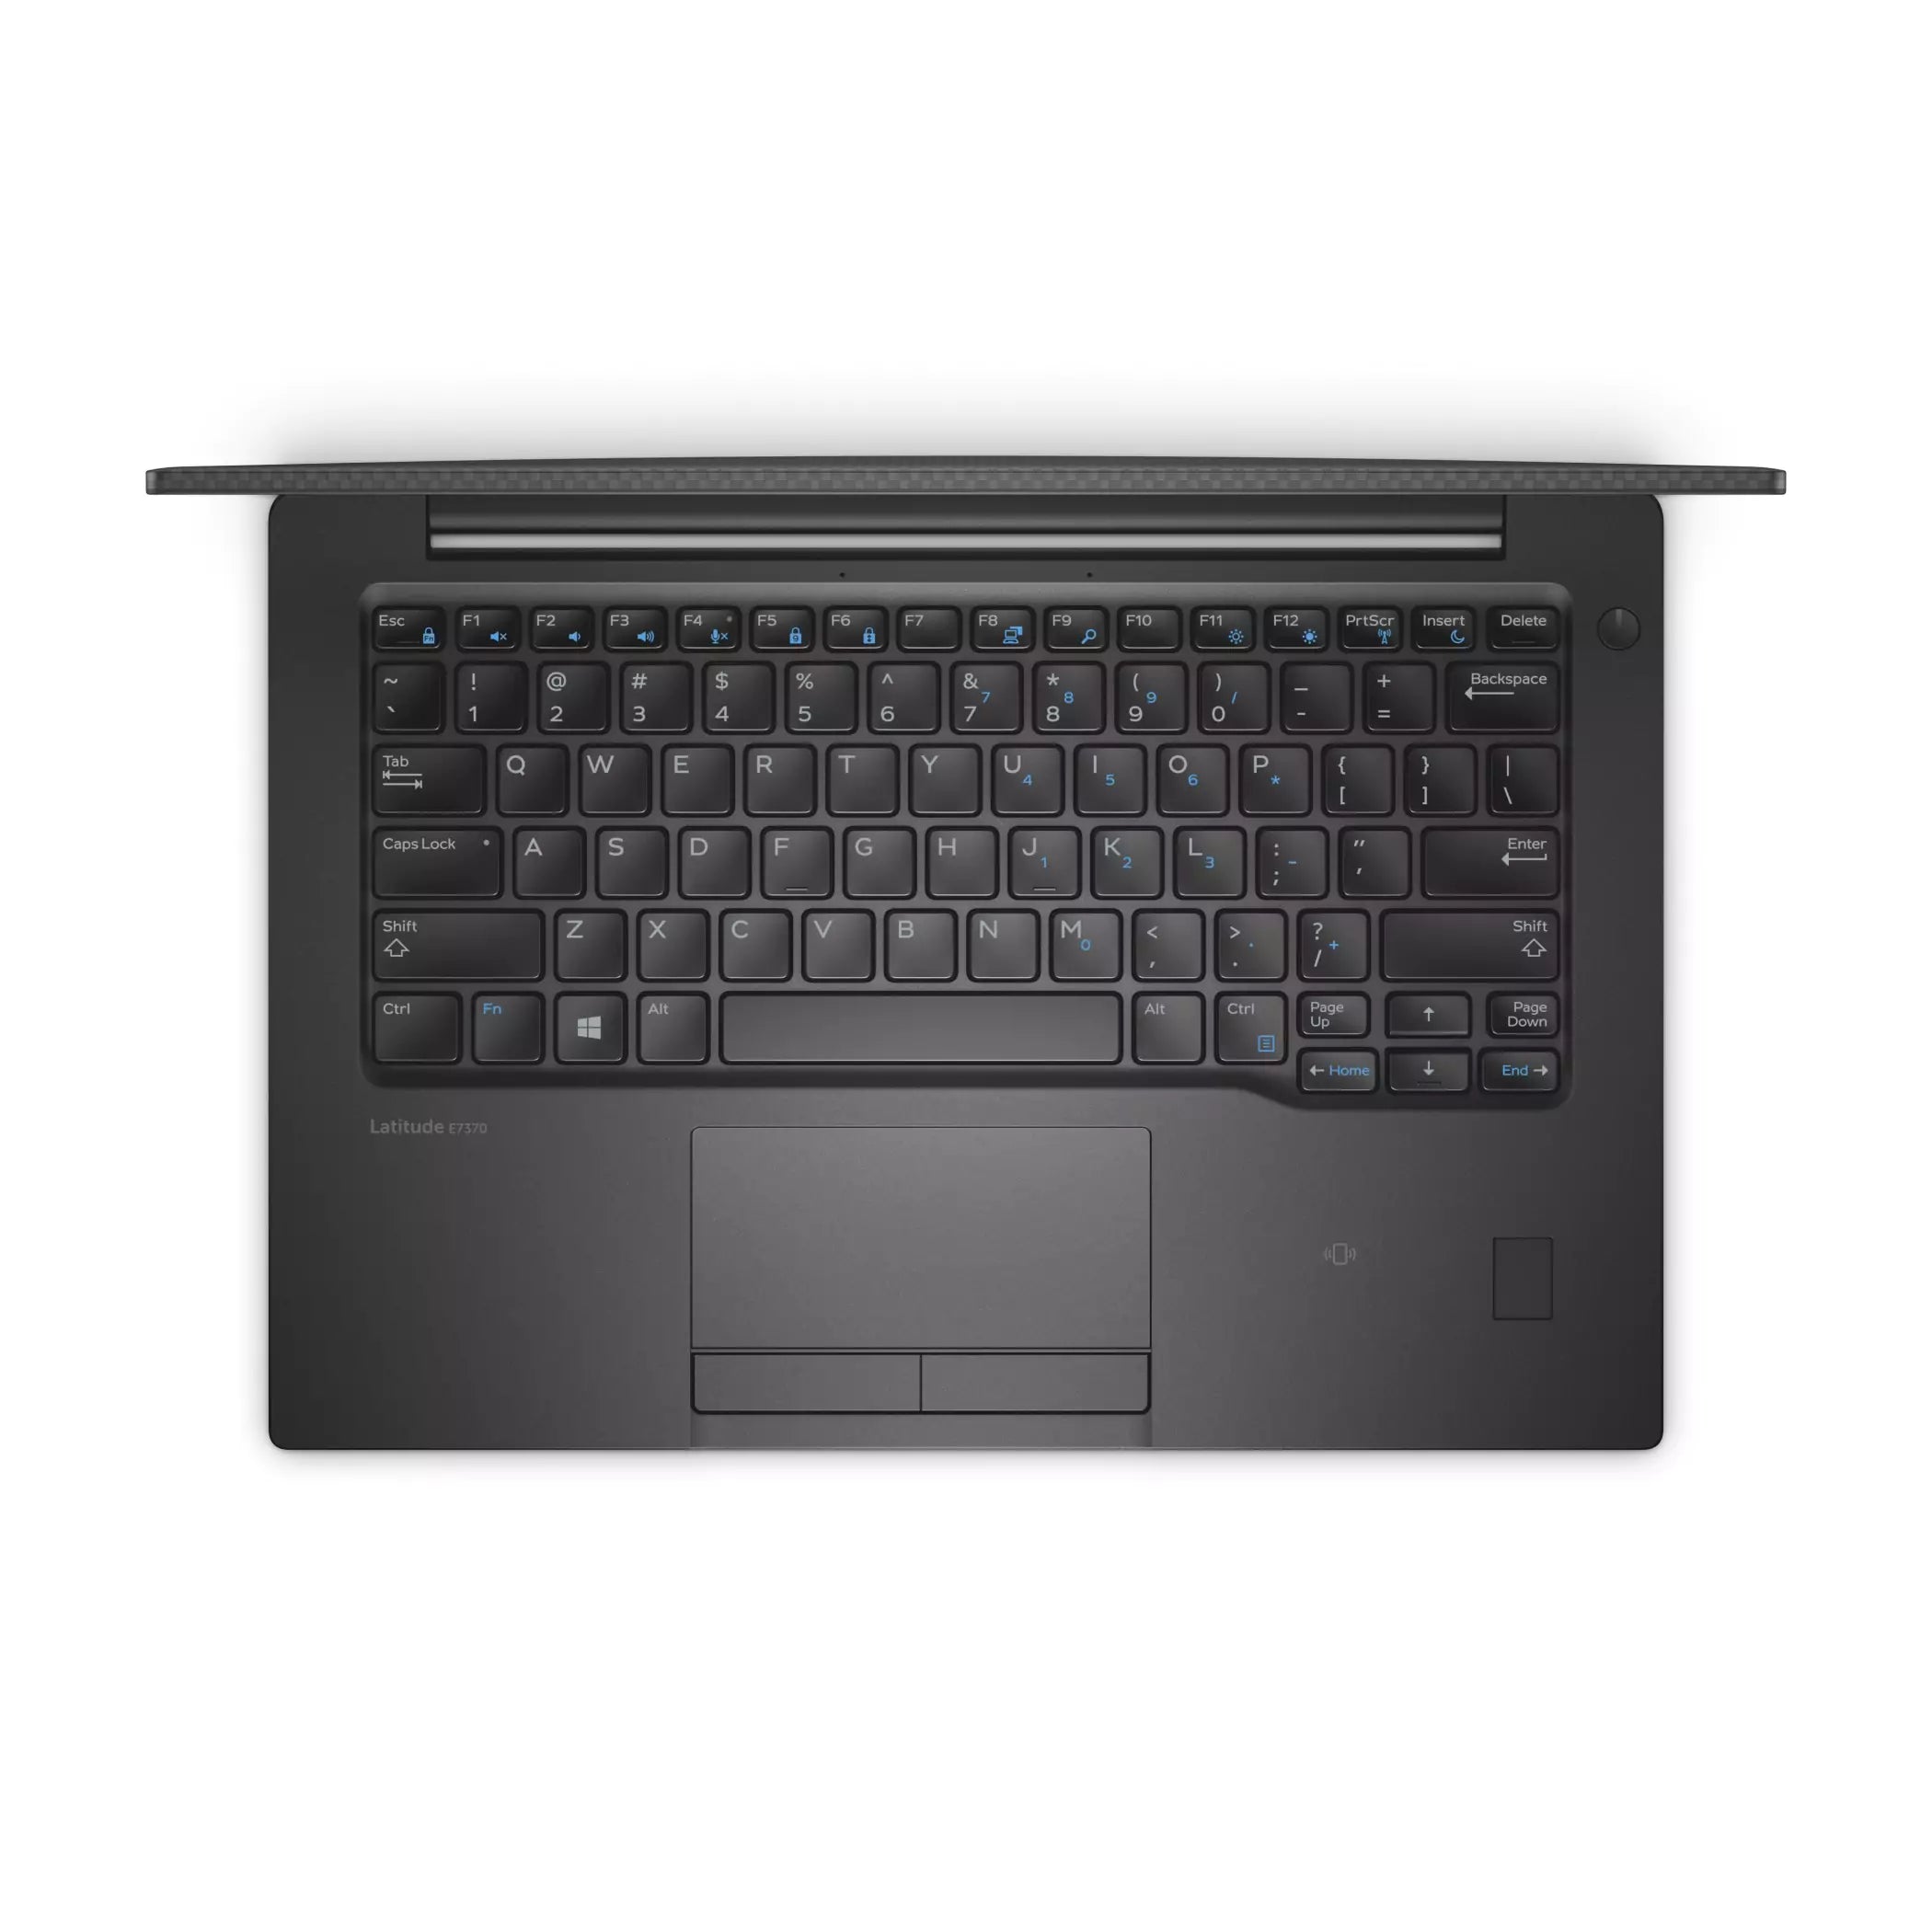 Dell Latitude 7370 Notebook 13.3″ FullHD | Intel Core M5-6Y57 1.1Ghz | Ram 8Gb | SSD 256Gb | ESP Keyboard | Windows10 Pro